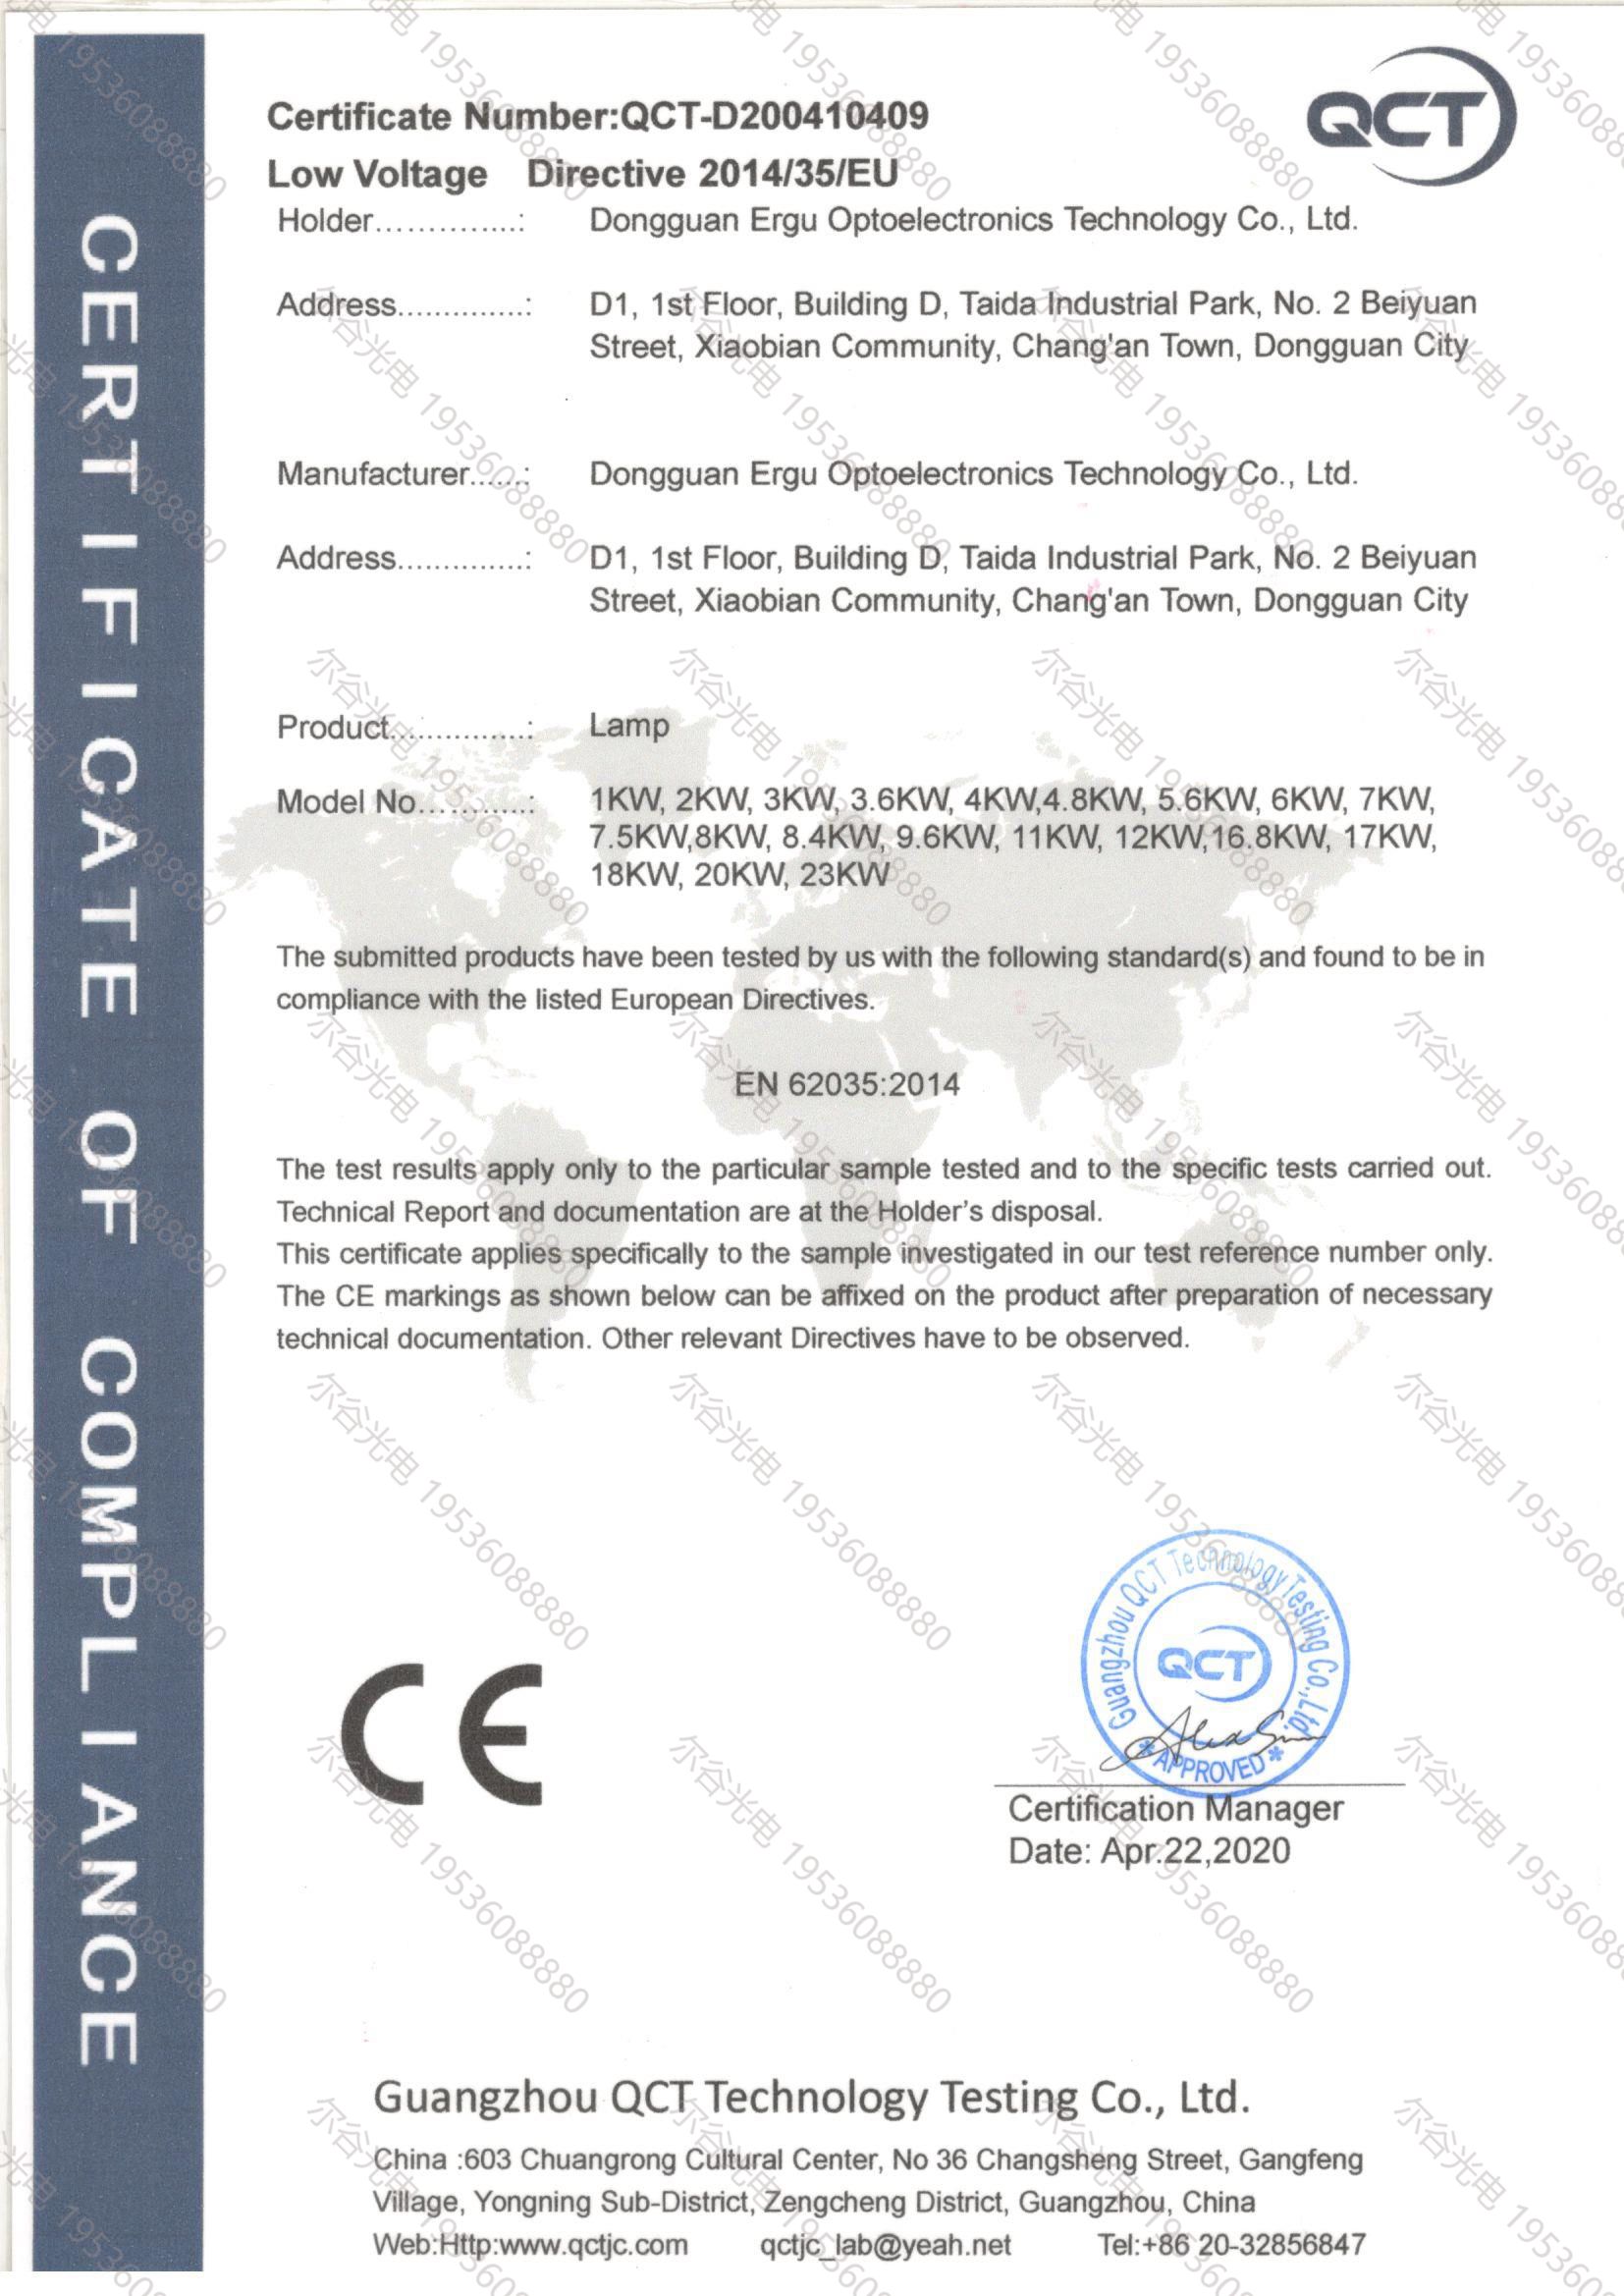 紫外線(xiàn)固化灯CE认证证书